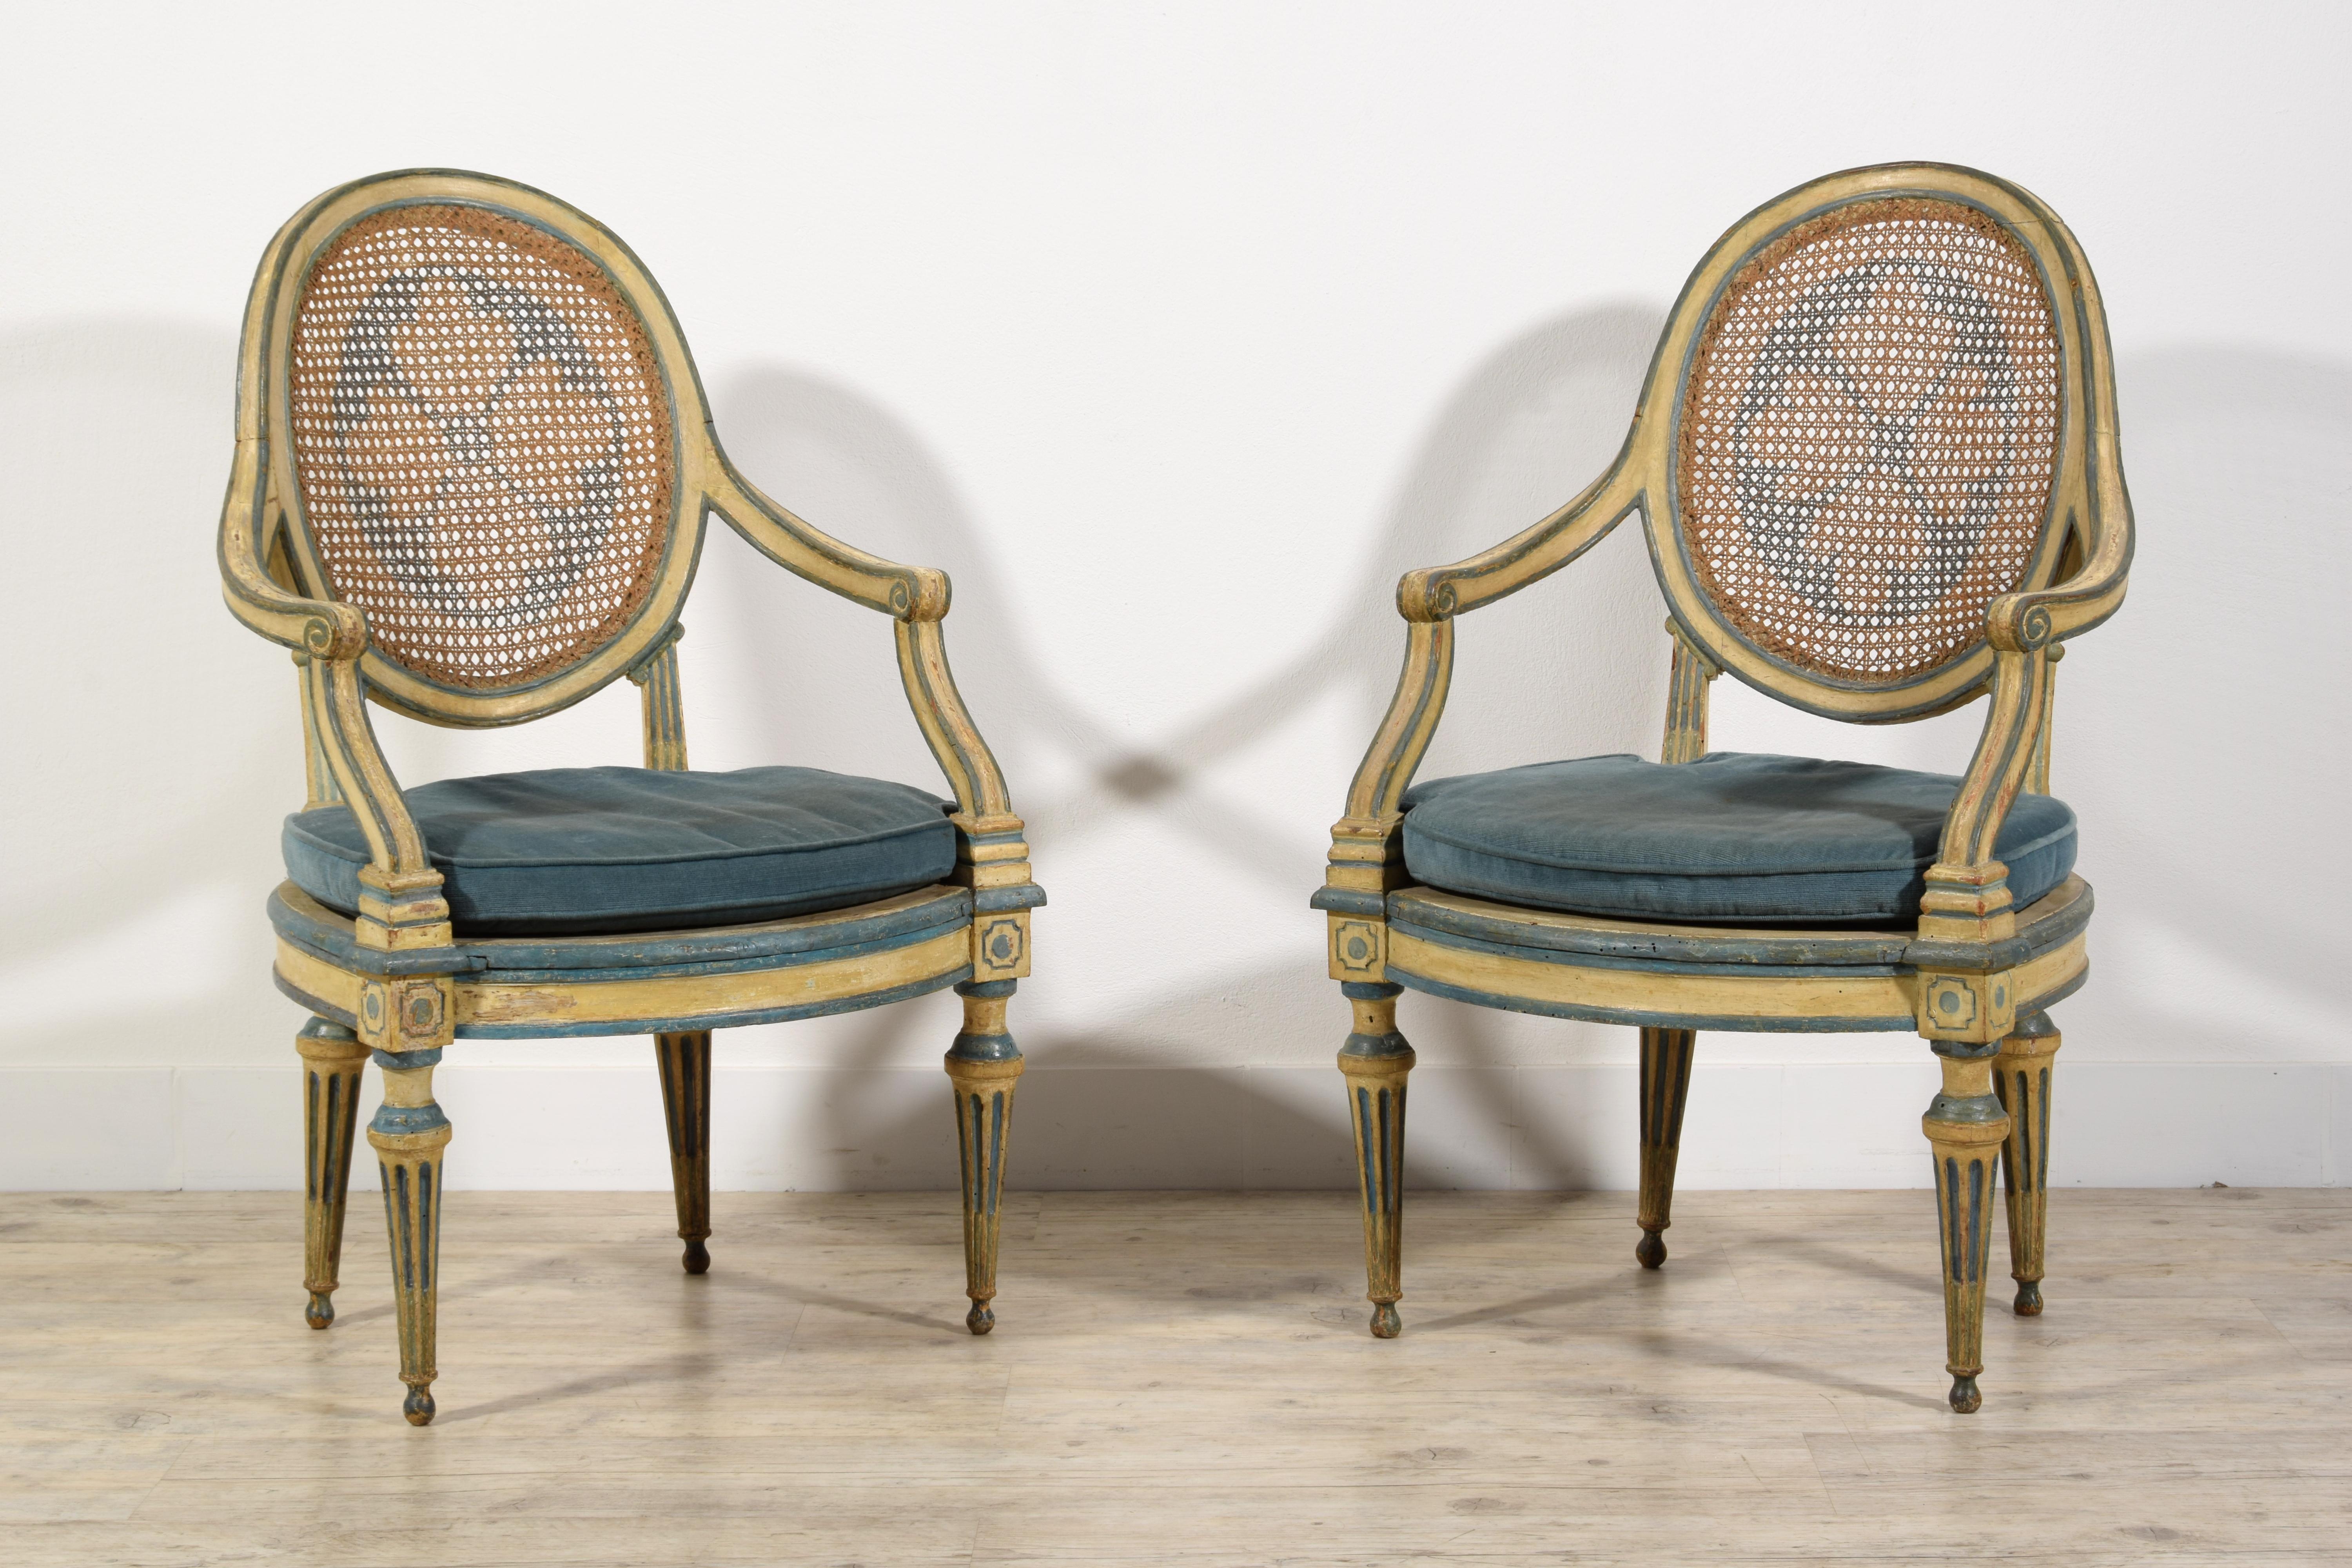 18. Jahrhundert Paar italienische neoklassische Sessel aus lackiertem Holz. 
Maße: cm H 108 x B 73 x T 77, Sitz cm H 46 x T 51 x B 61.
Dieses elegante Paar neoklassizistischer Sessel wurde gegen Ende des 18. Jahrhunderts in Genua, Italien,